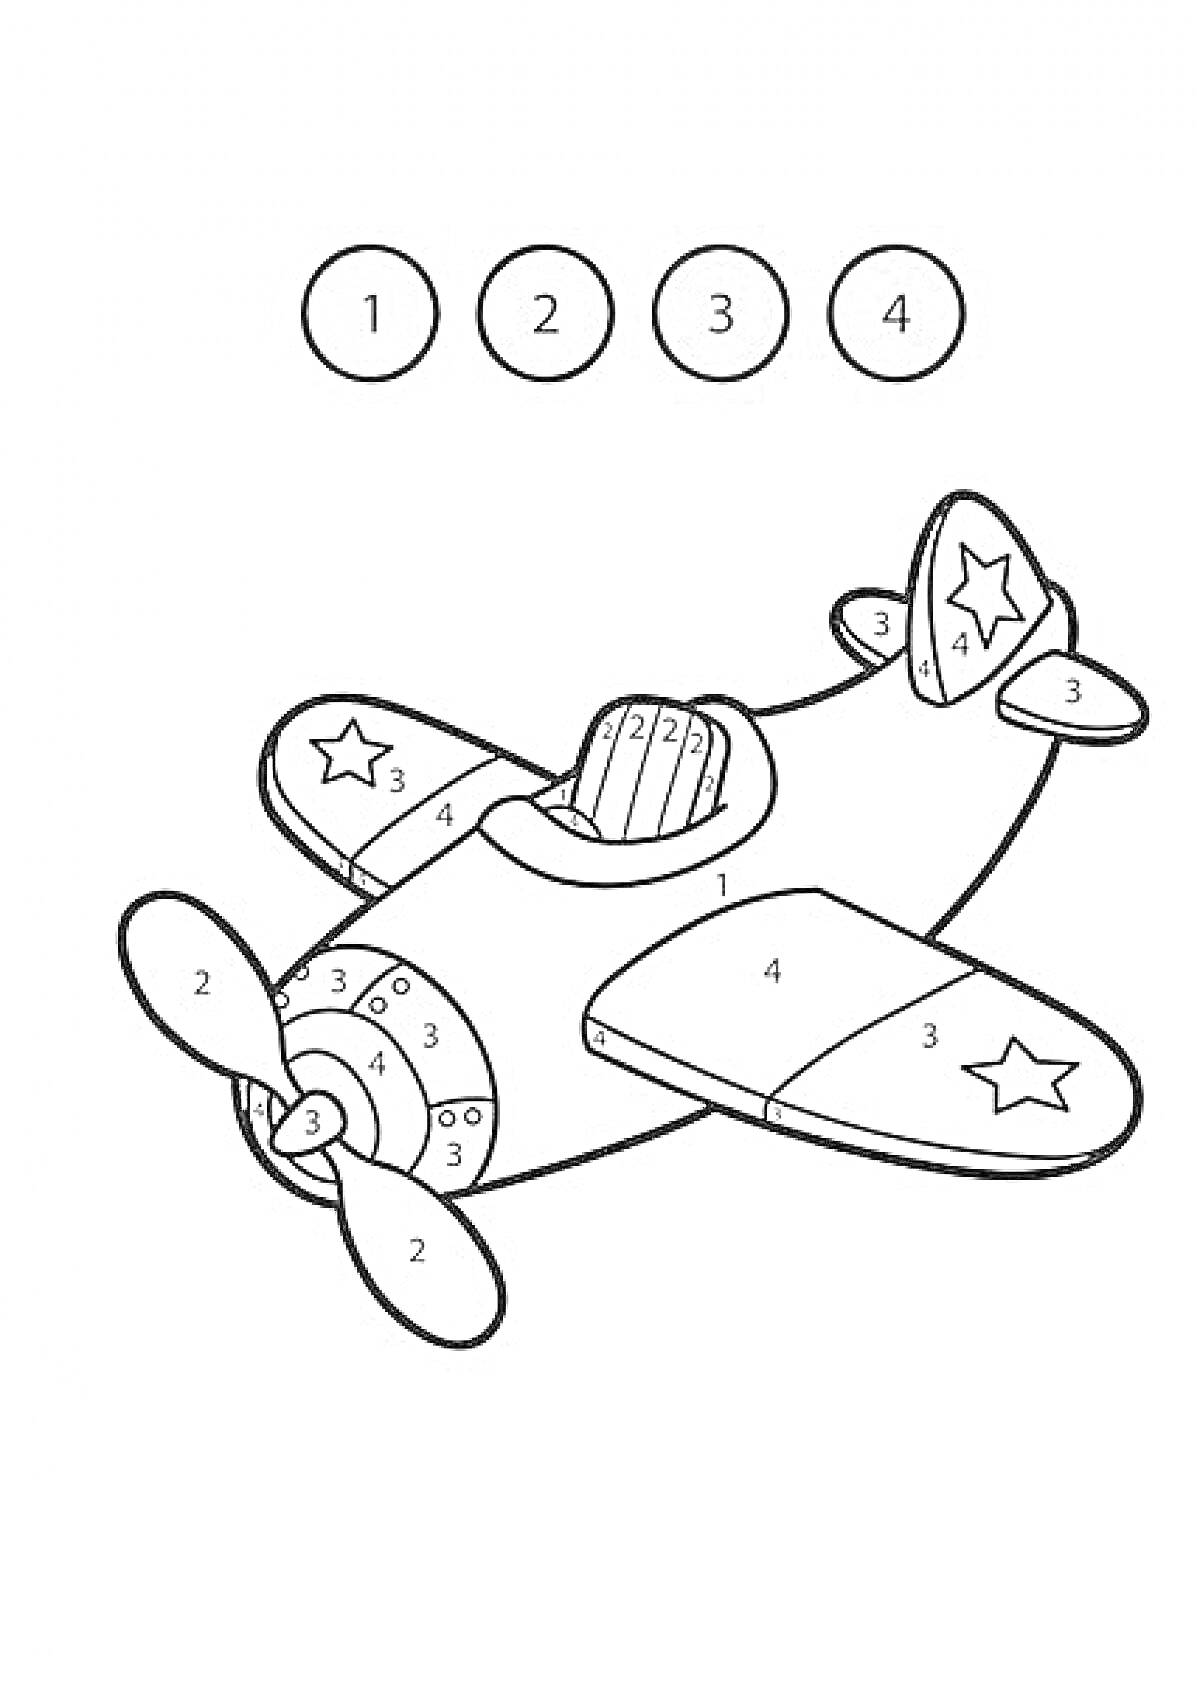 раскраска с изображением самолета с числовыми обозначениями и листом с цветовой схемой (1 - желтый, 2 - серый, 3 - голубой, 4 - оранжевый)